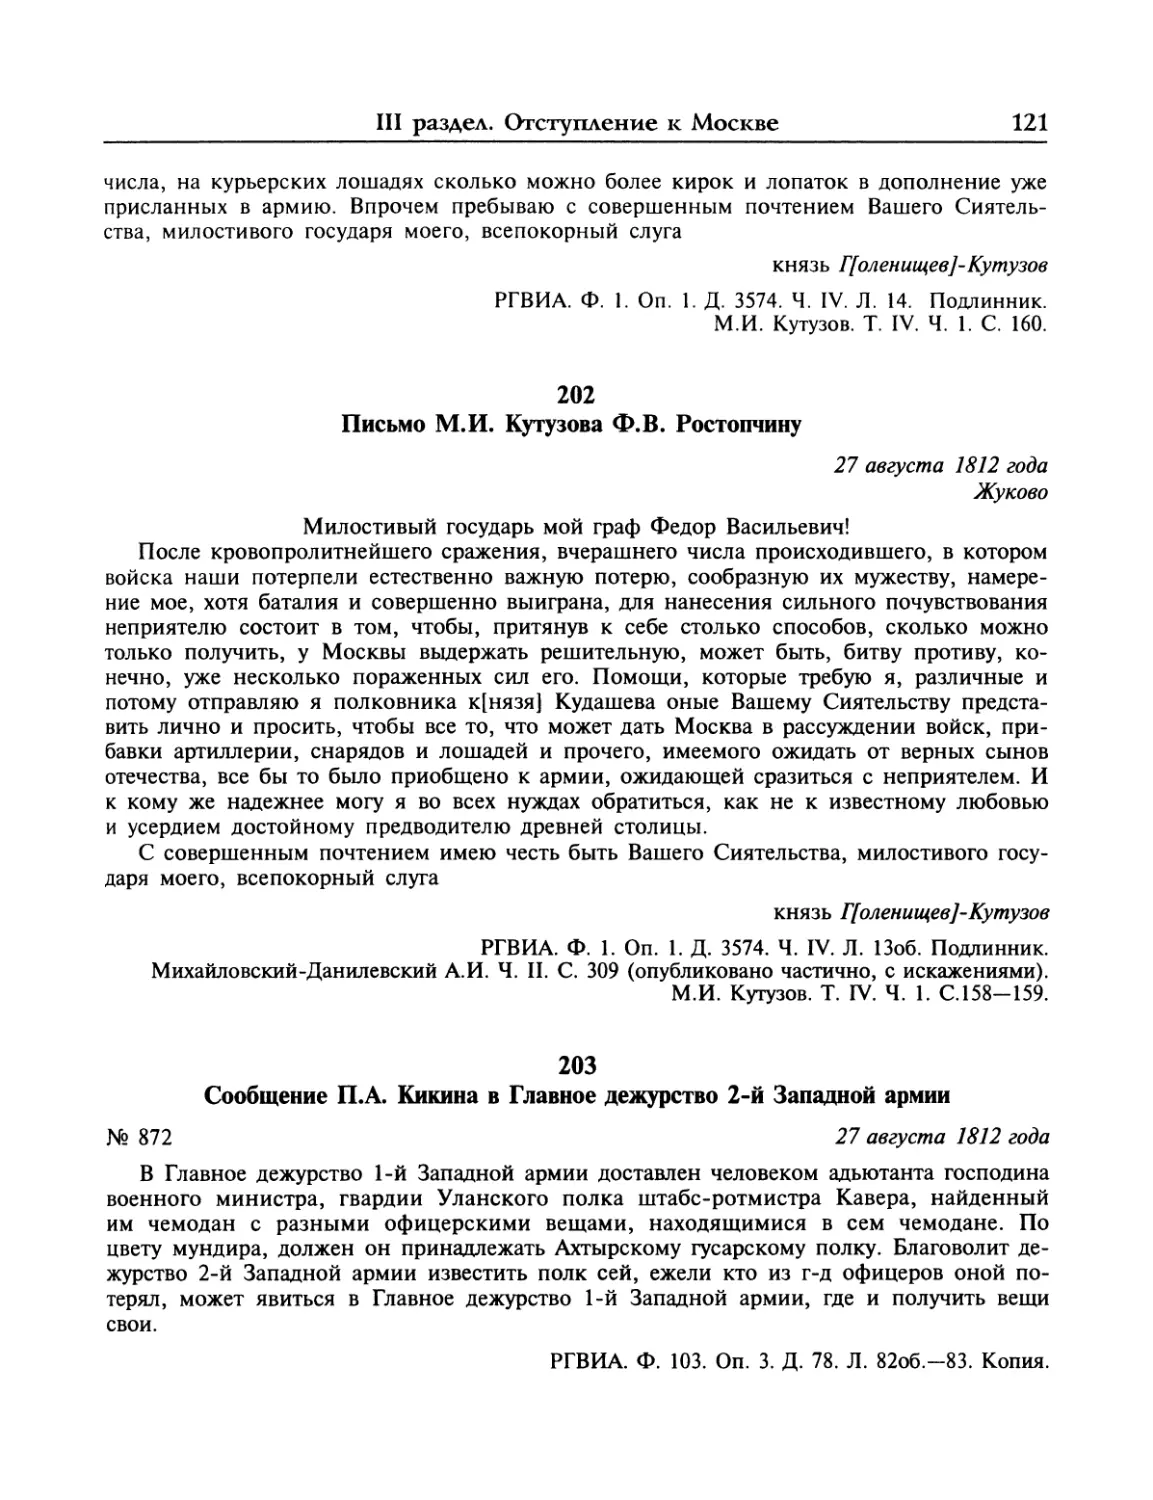 Письмо М.И.Кутузова Ф.В.Ростопчину
Сообщение П.А.Кикина в Главное дежурство 2-й Западной армии